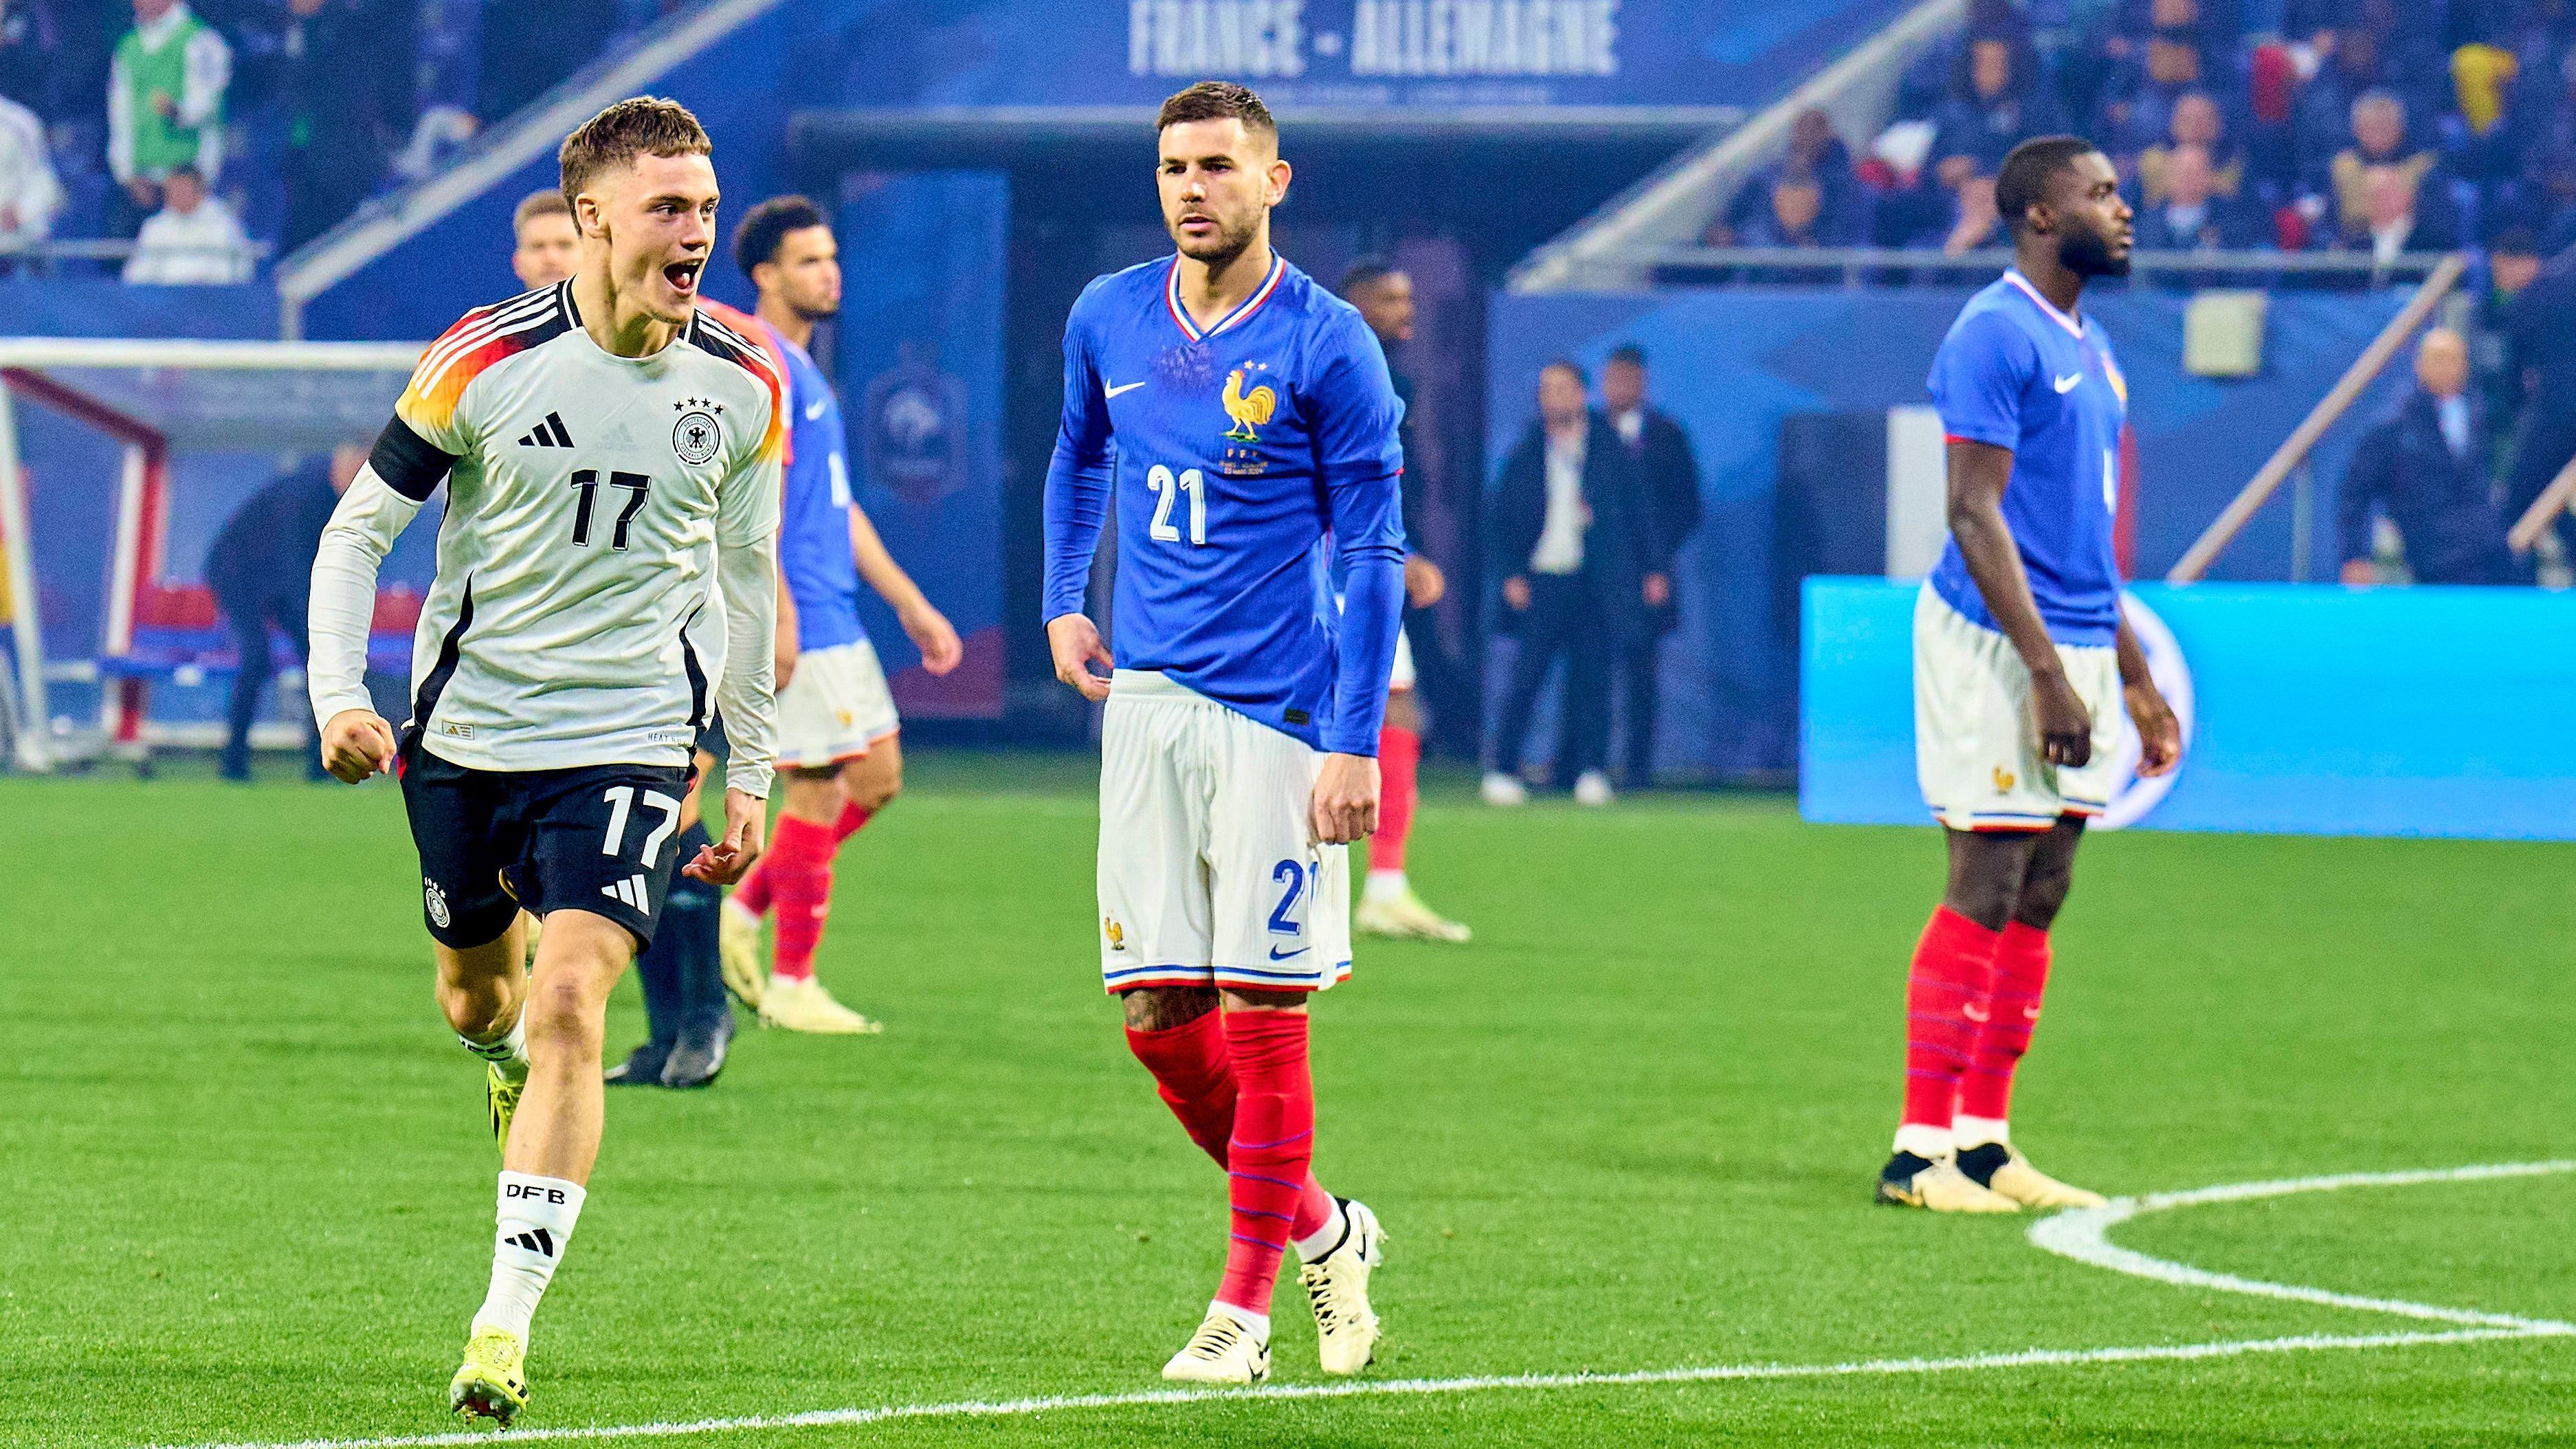 <strong>England</strong><br><strong>BBC</strong>: "Wirtz stellt beim Sieg über Frankreich neuen deutschen Torrekord auf. Der Leverkusener erzielte schon nach sieben Sekunden einen Treffer und Deutschland beendete eine sieglose Serie von drei Spielen mit einem souveränen Sieg über Frankreich in Lyon."